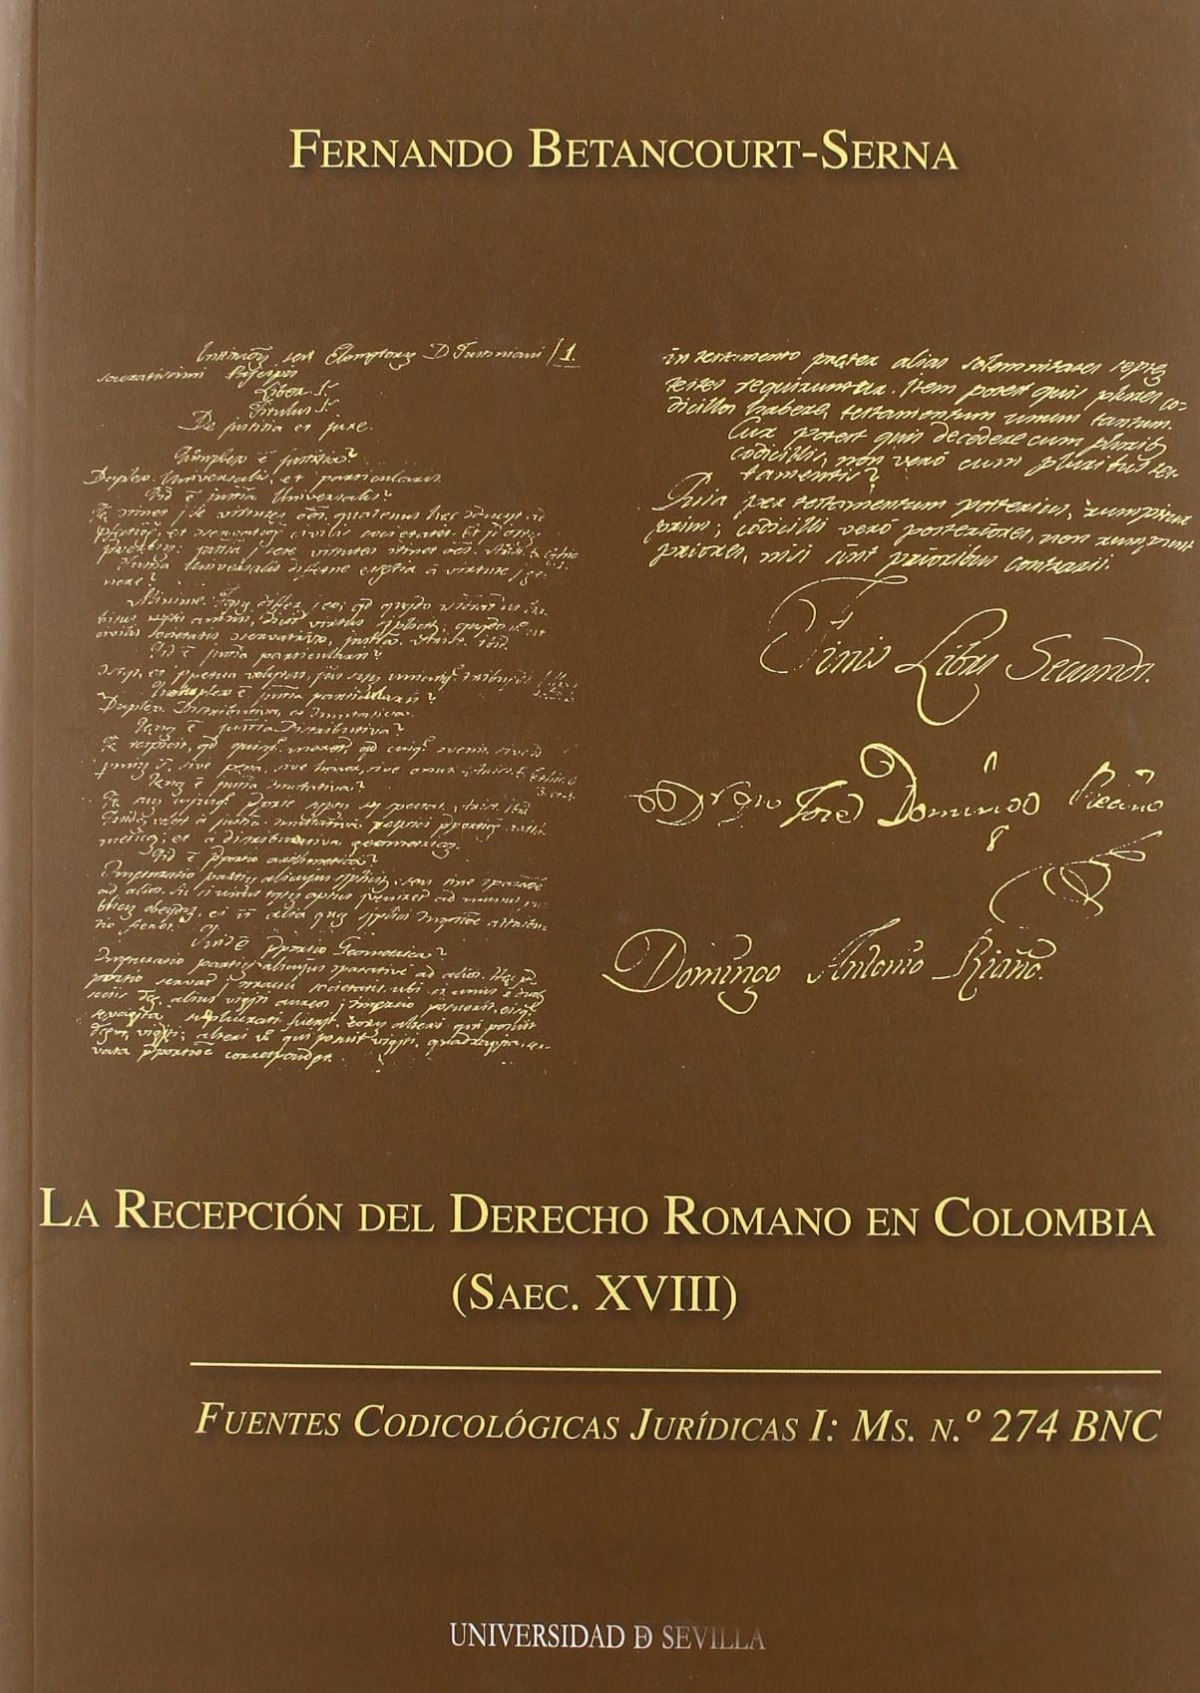 Recepcion del derecho romano en colombia (saec. xviii),la. - Betancourt Serna, Fernando